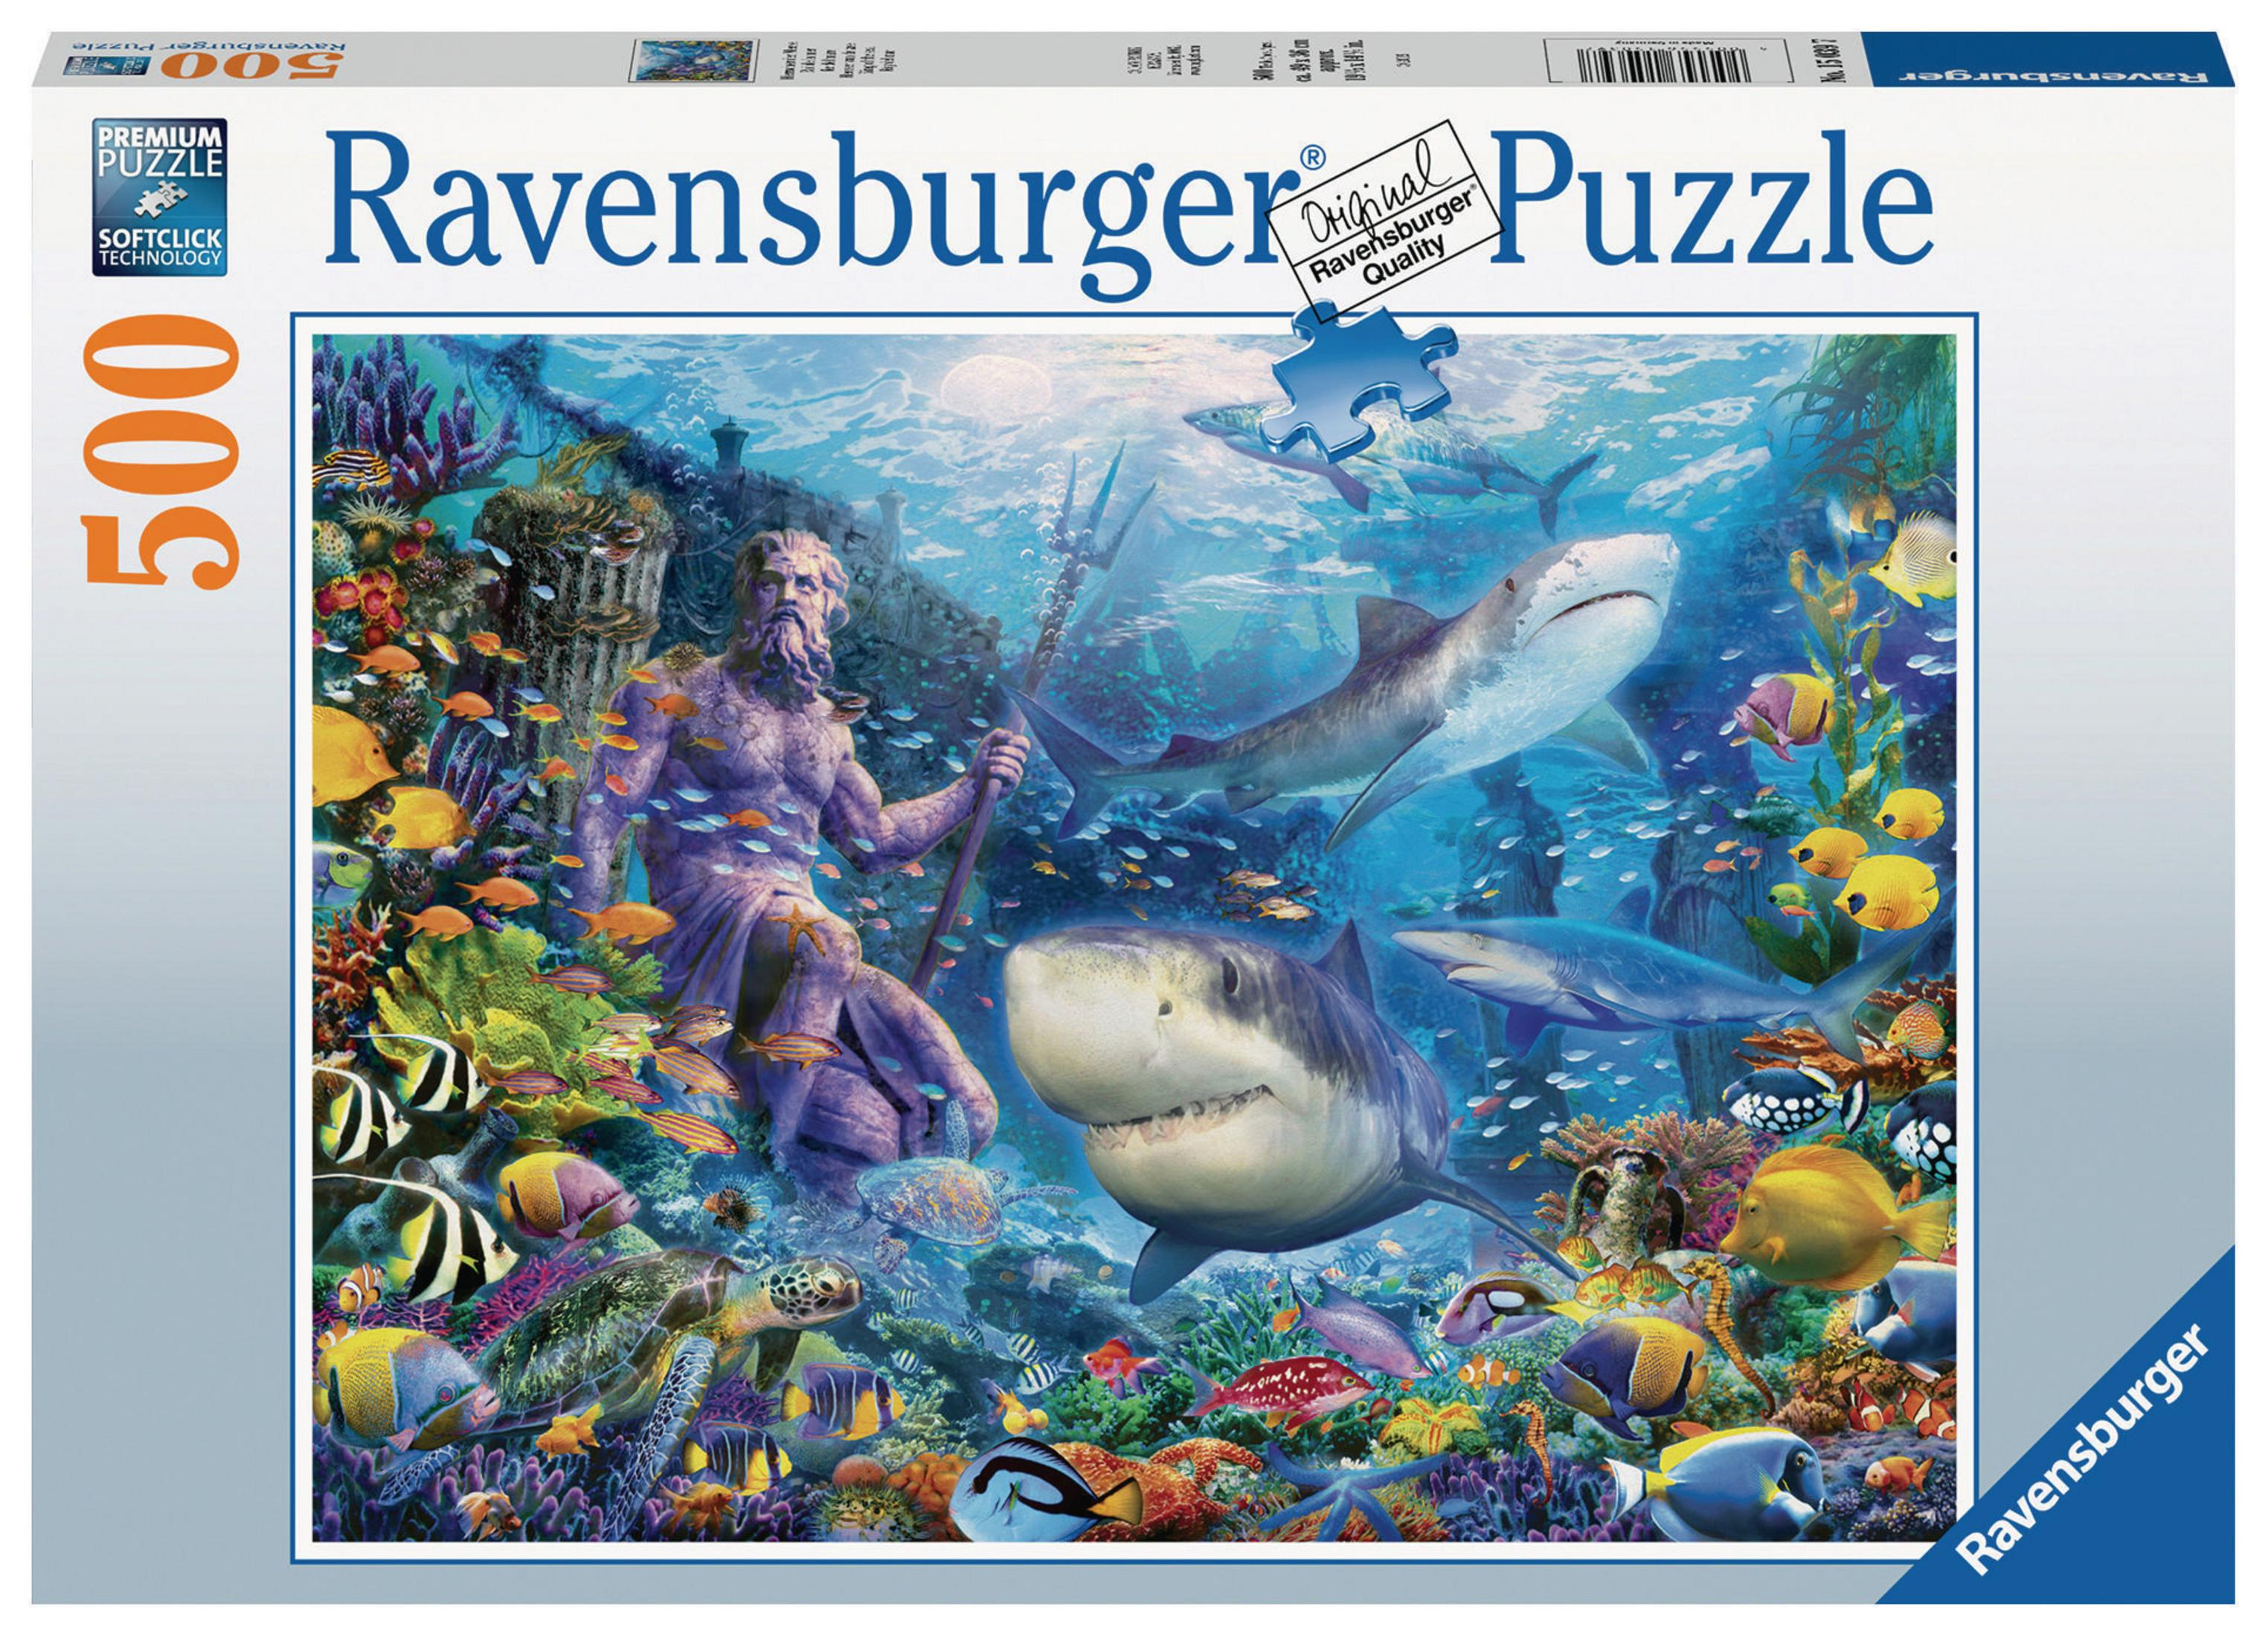 MEERE DER HERRSCHER Puzzle 15039 RAVENSBURGER